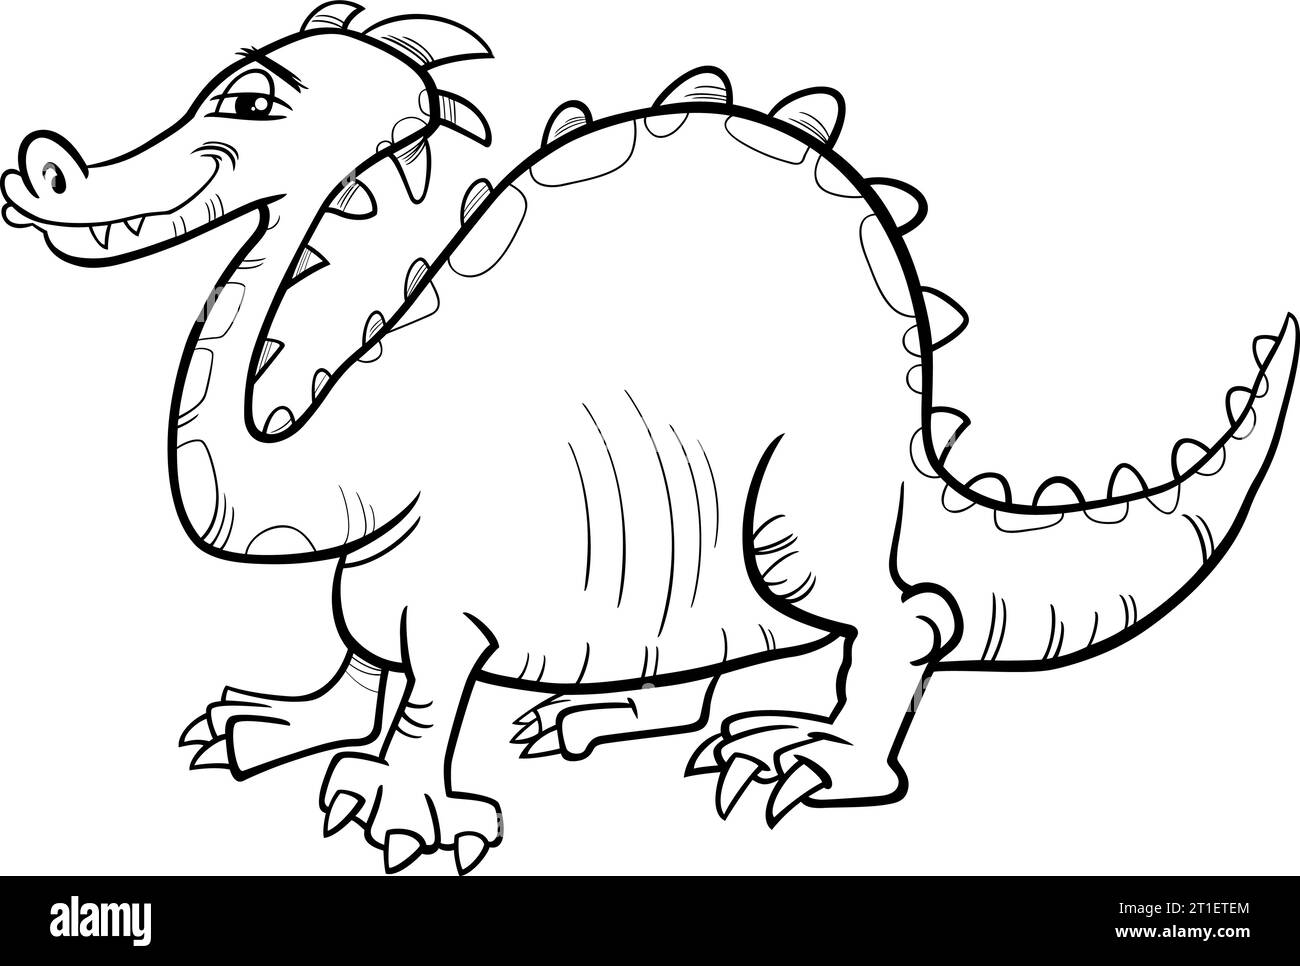 Illustration fantastique humoristique de dessin animé noir et blanc de la page de coloriage de personnage comique de dragon Illustration de Vecteur